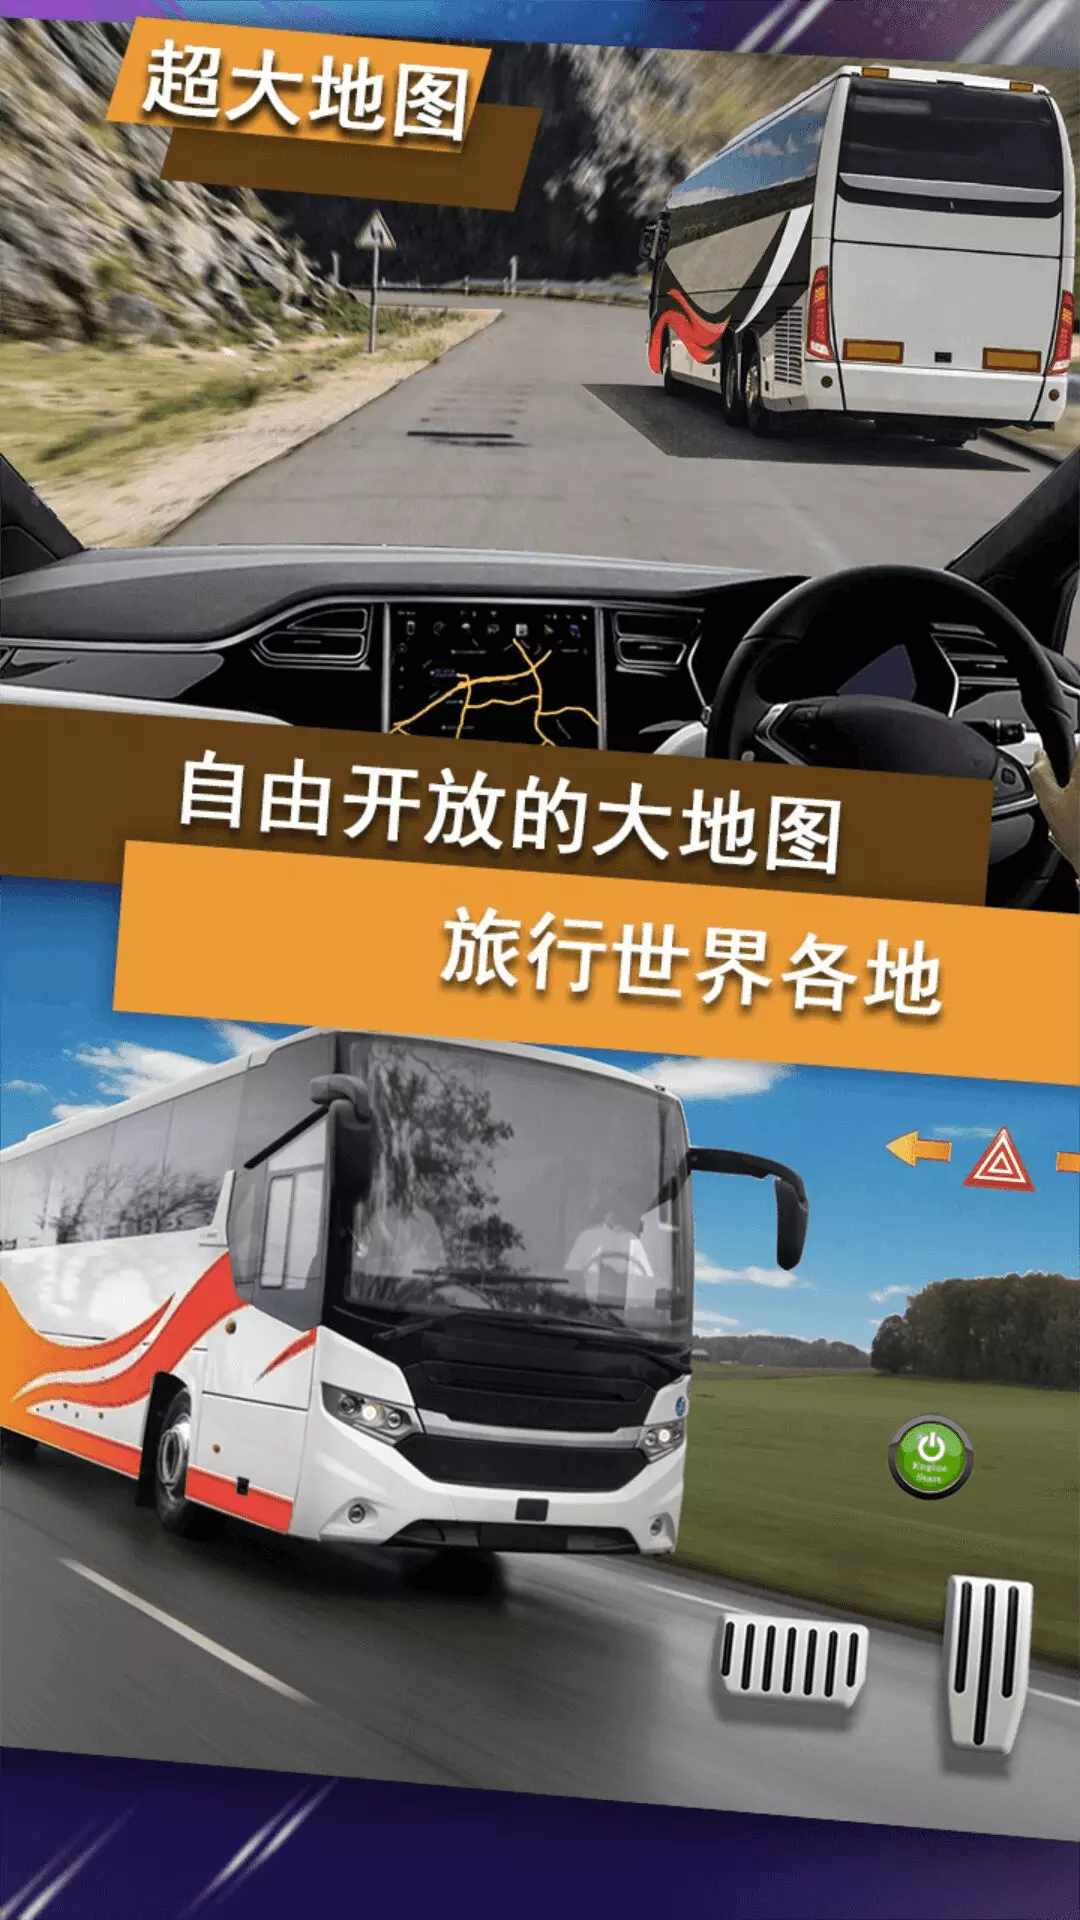 公交车驾驶训练-真实公路驾驶模拟器 v3.2-真实模拟驾驶公交车体验驾驶乐趣